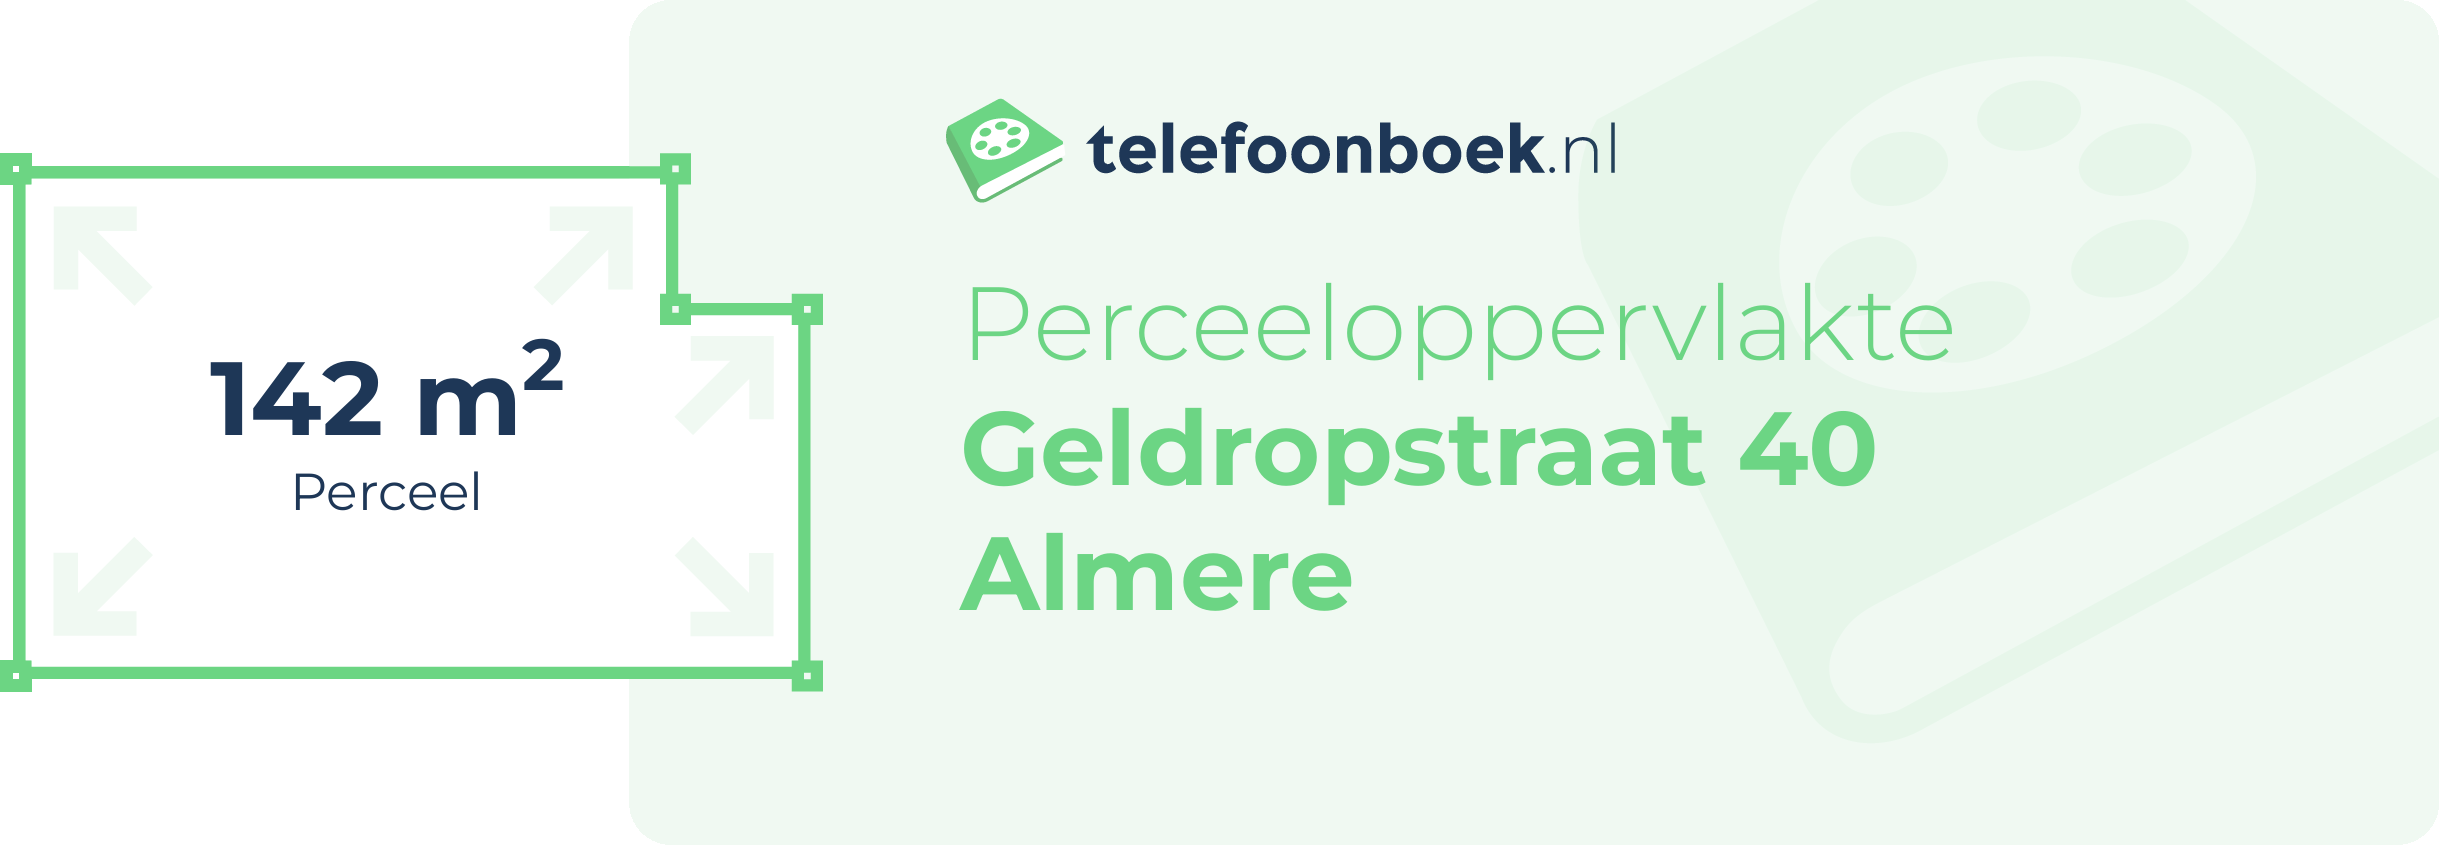 Perceeloppervlakte Geldropstraat 40 Almere